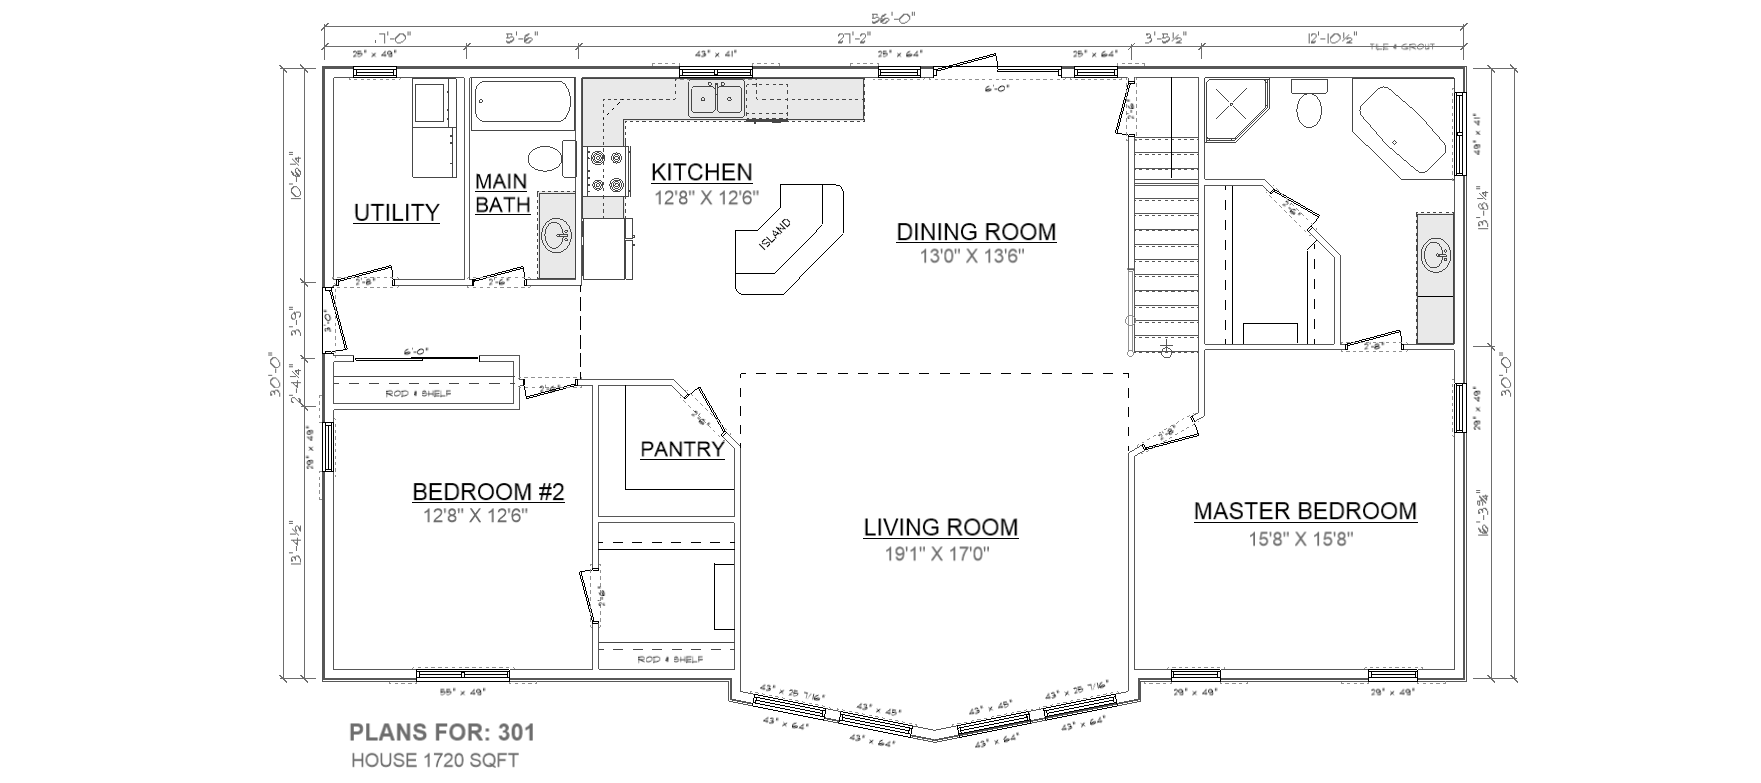 Penner Homes Floor Plan Id: 301